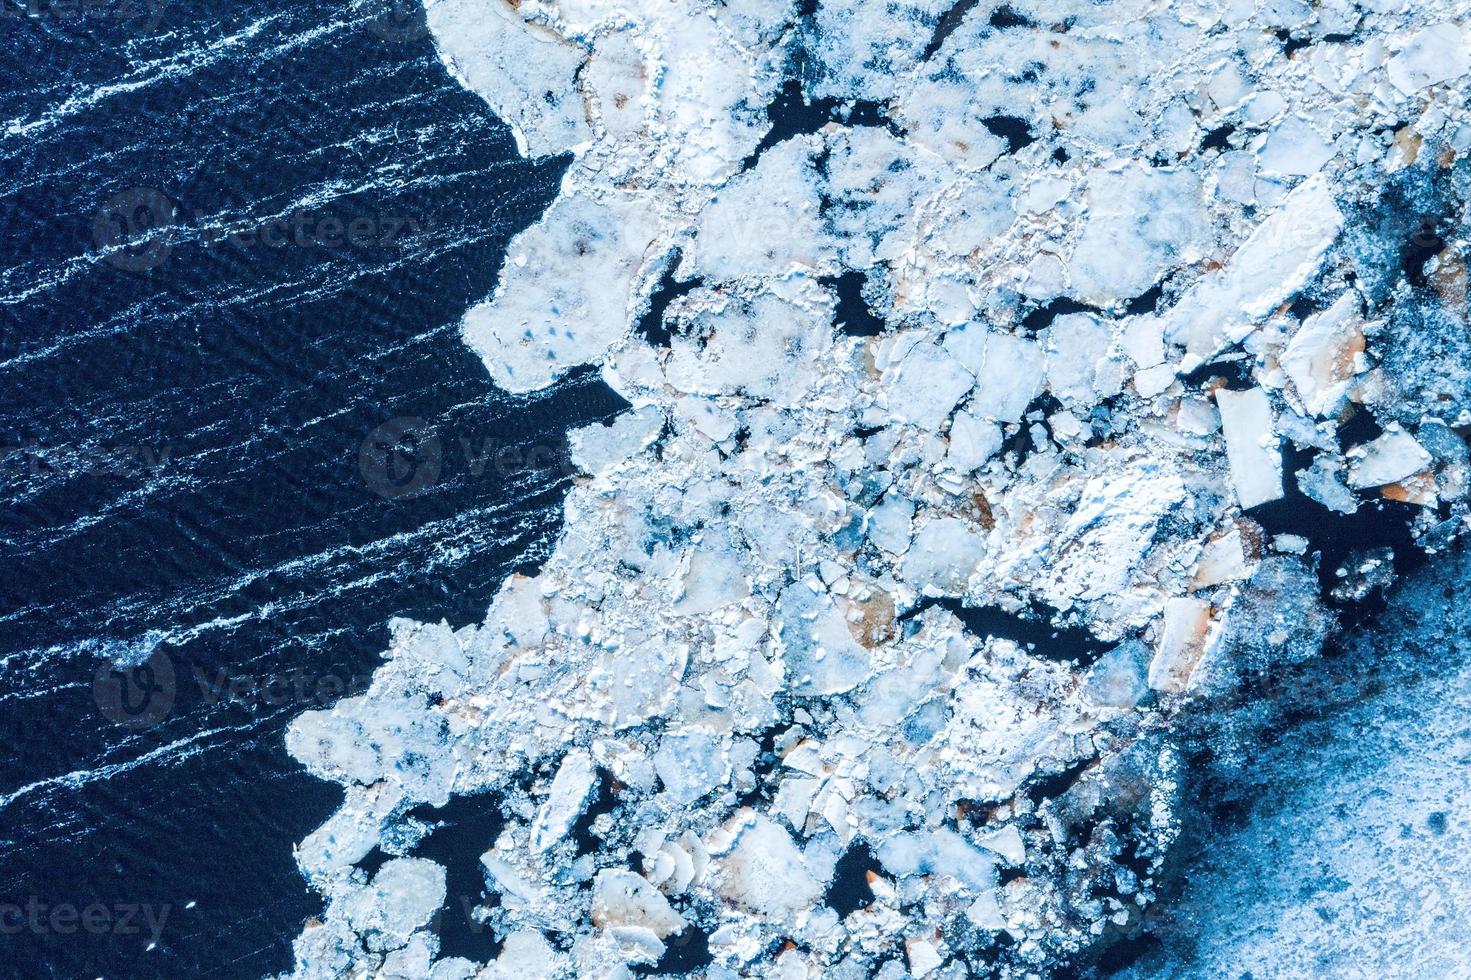 grote brokken ijsblokken die een prachtig patroon vormden, nadat het ijsbrekerschip voorbijkwam en het dicht opeengepakte ijs verpletterde. foto